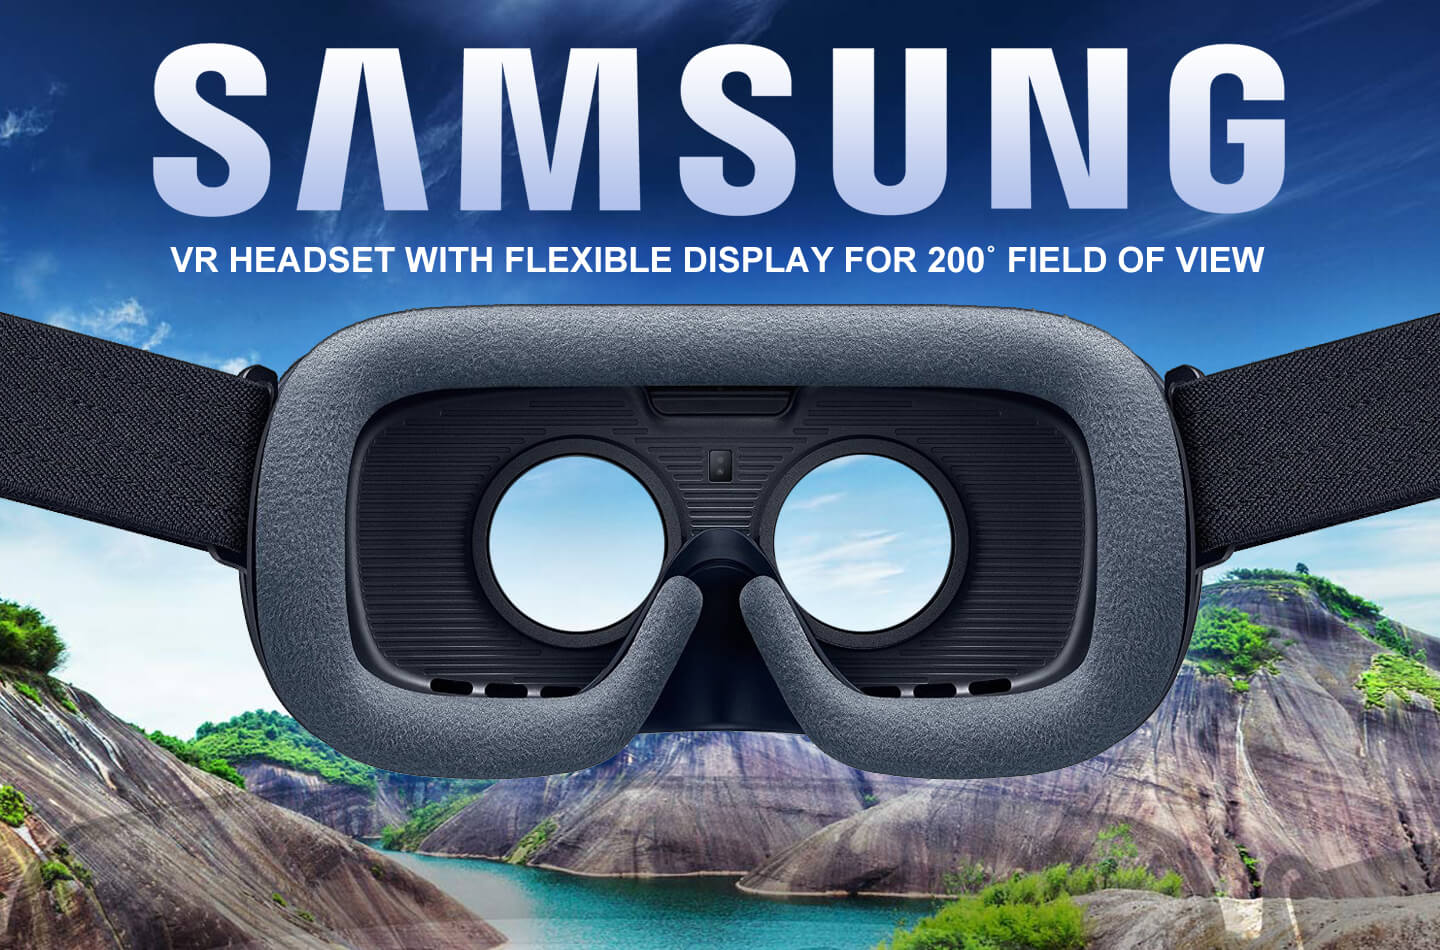 melk overdracht Wiskundige Samsung VR headset met flexibel display biedt meer zicht | LetsGoDigital